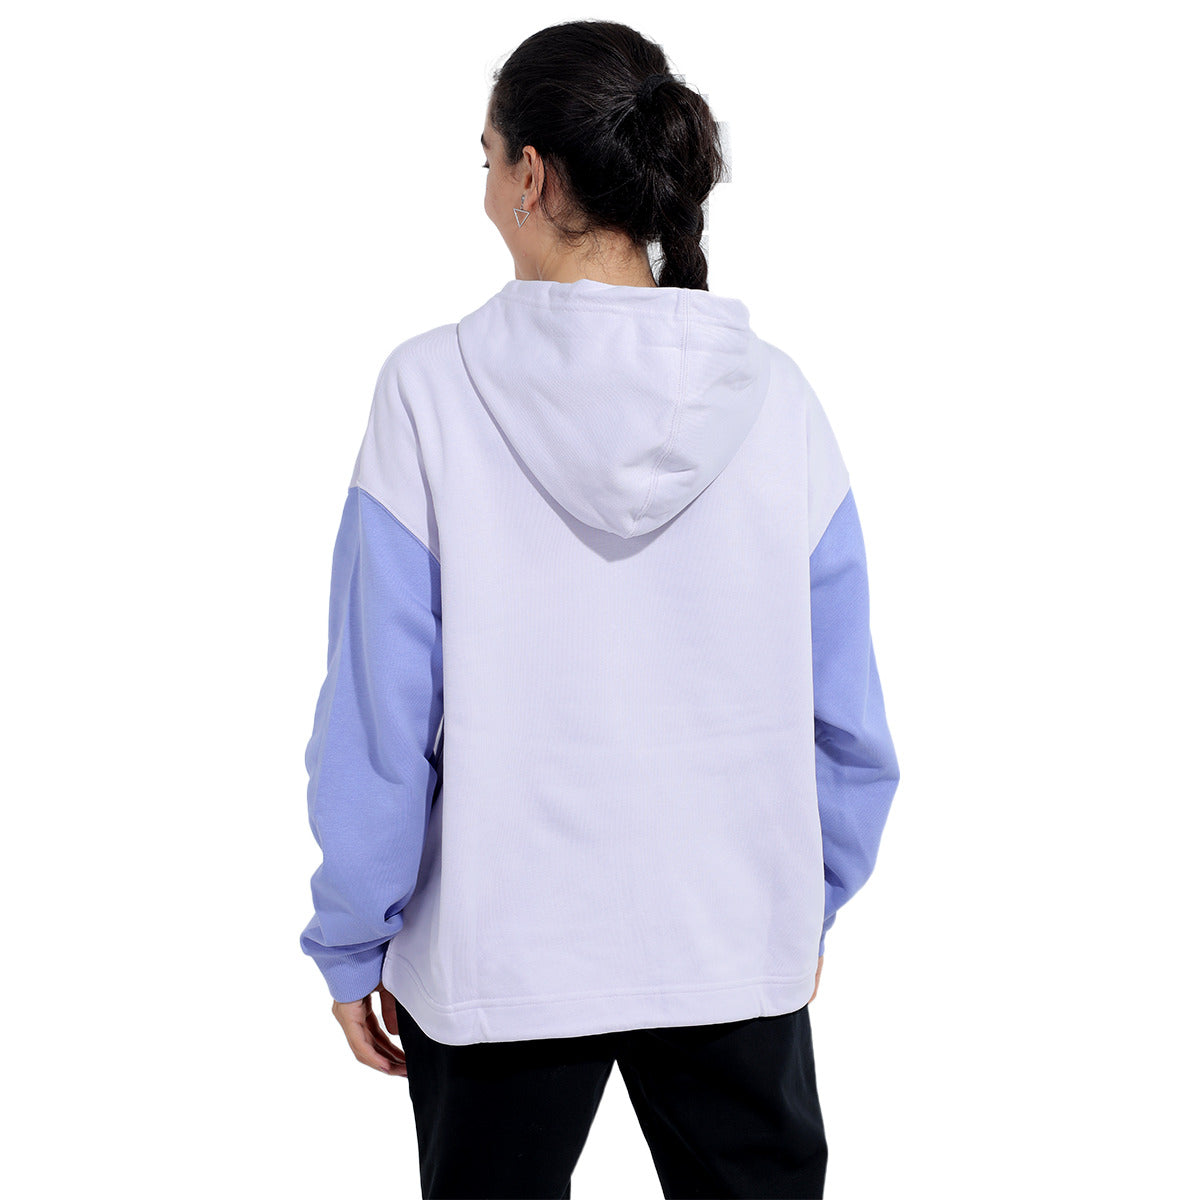 Anta Hooded Sweatshirt For Women, Purple & Blue